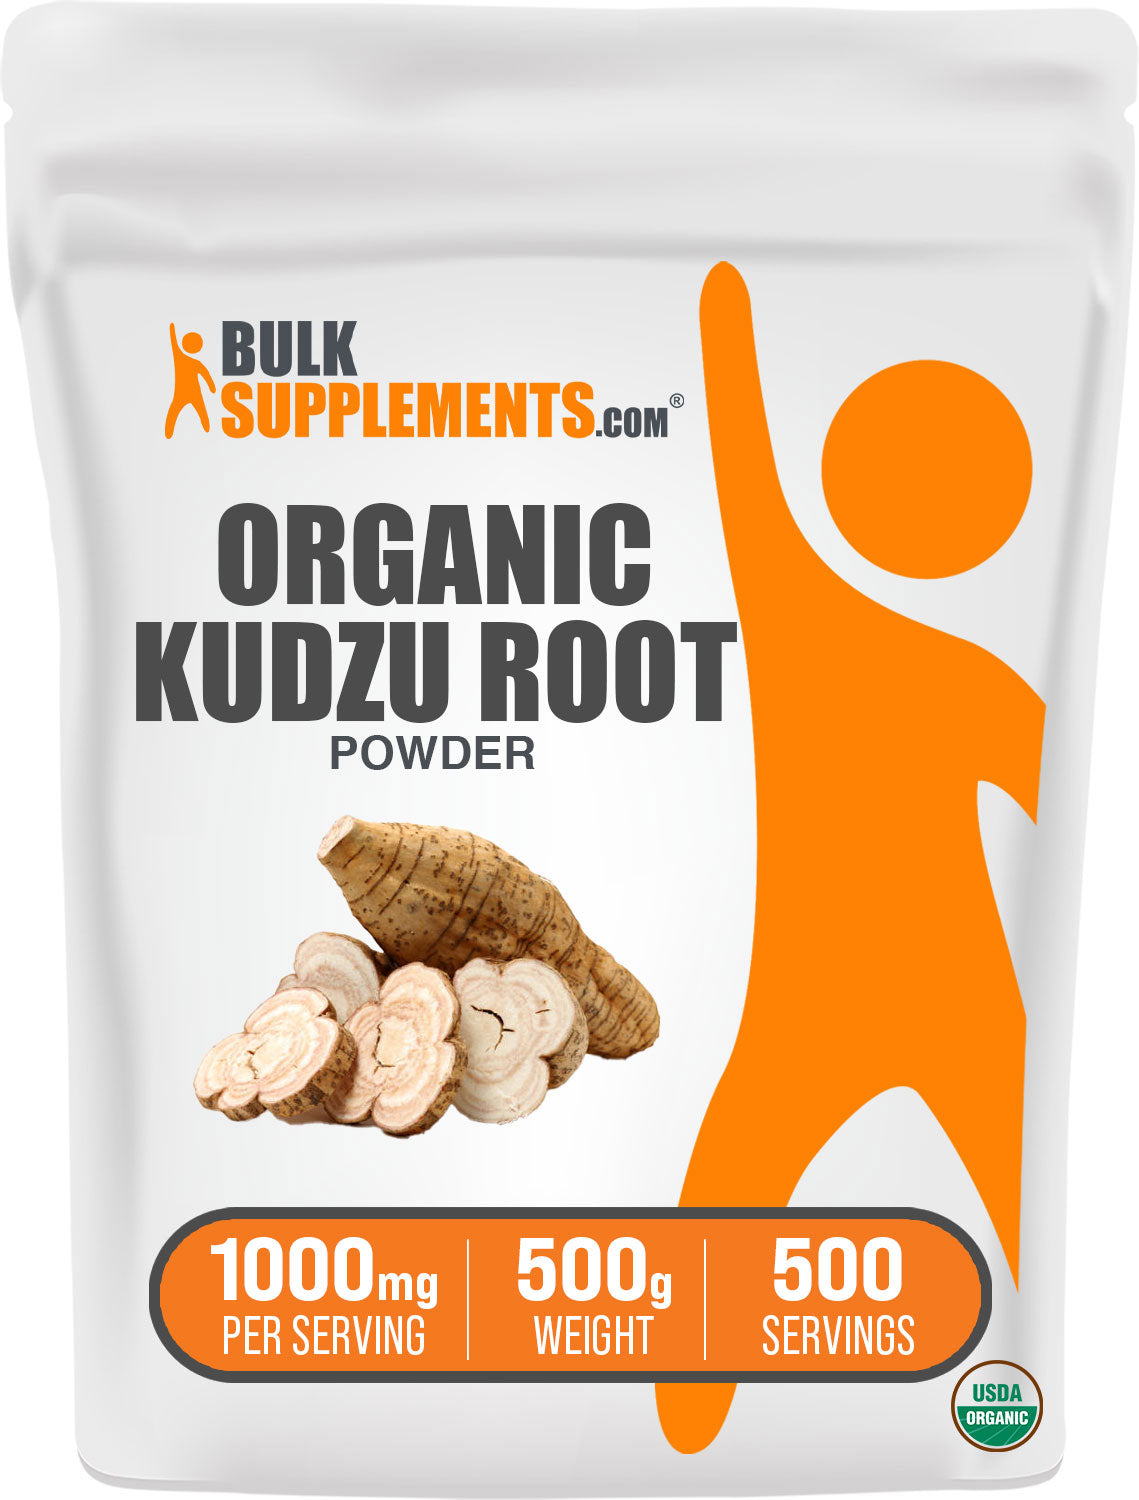 Organic Kudzu Root Powder 500g Bag